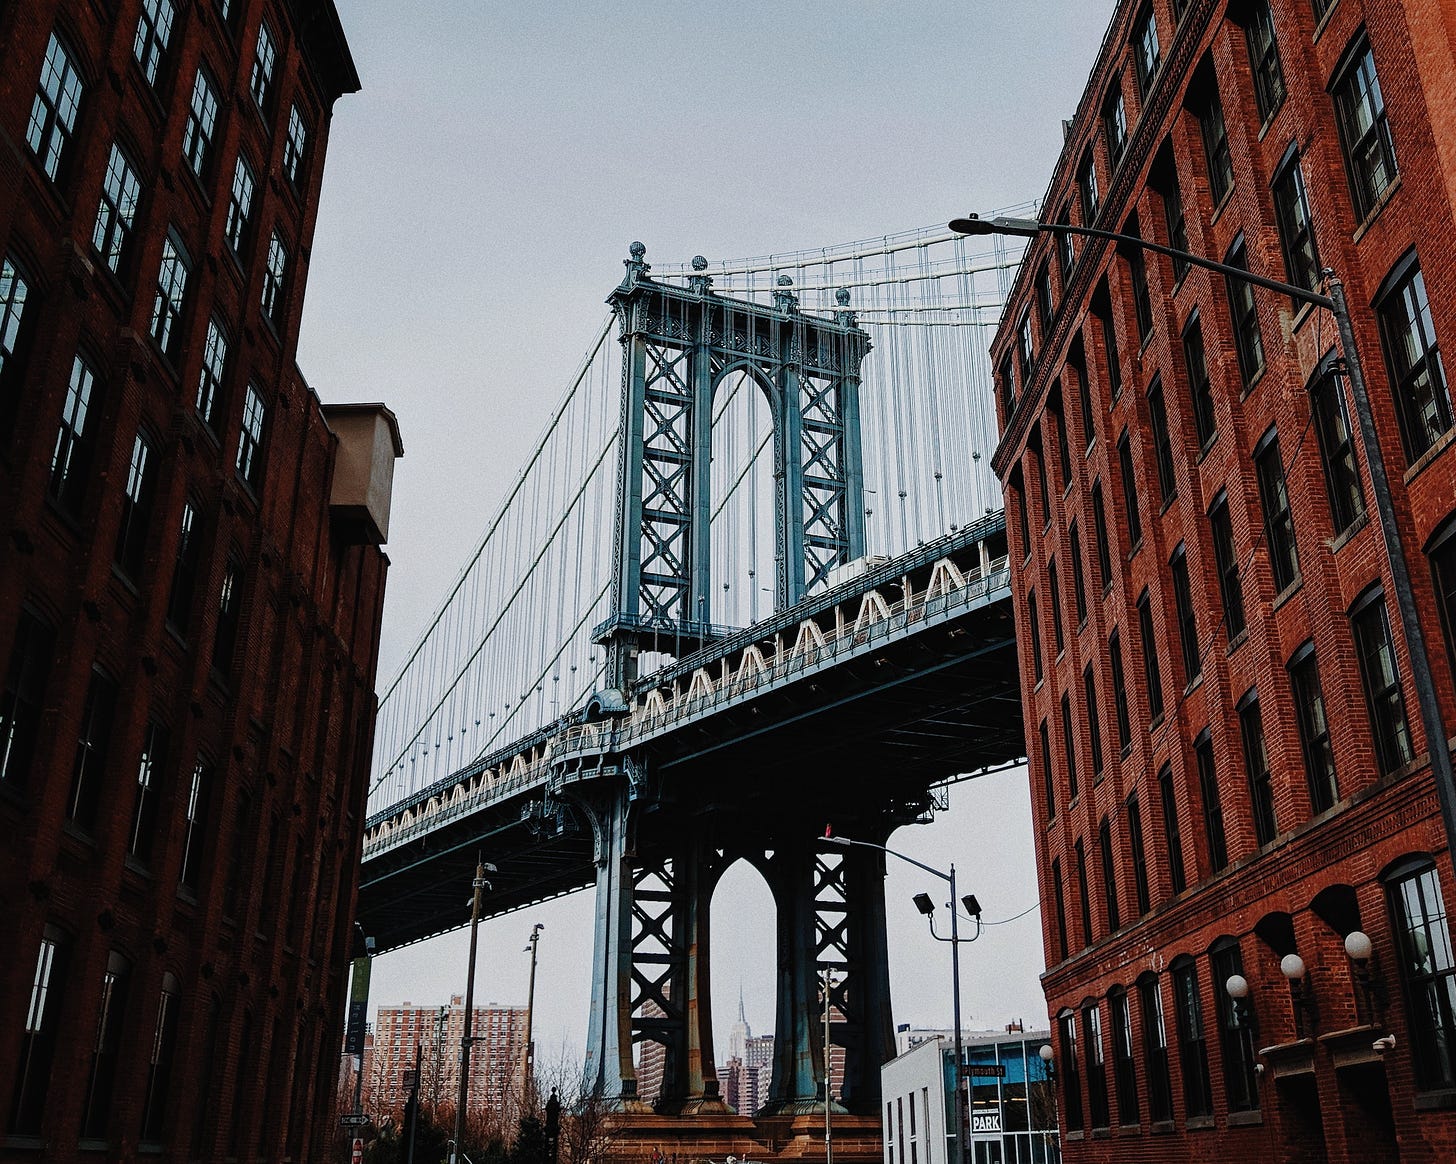 Photo of the Brooklyn Bridge between two brick buildings.